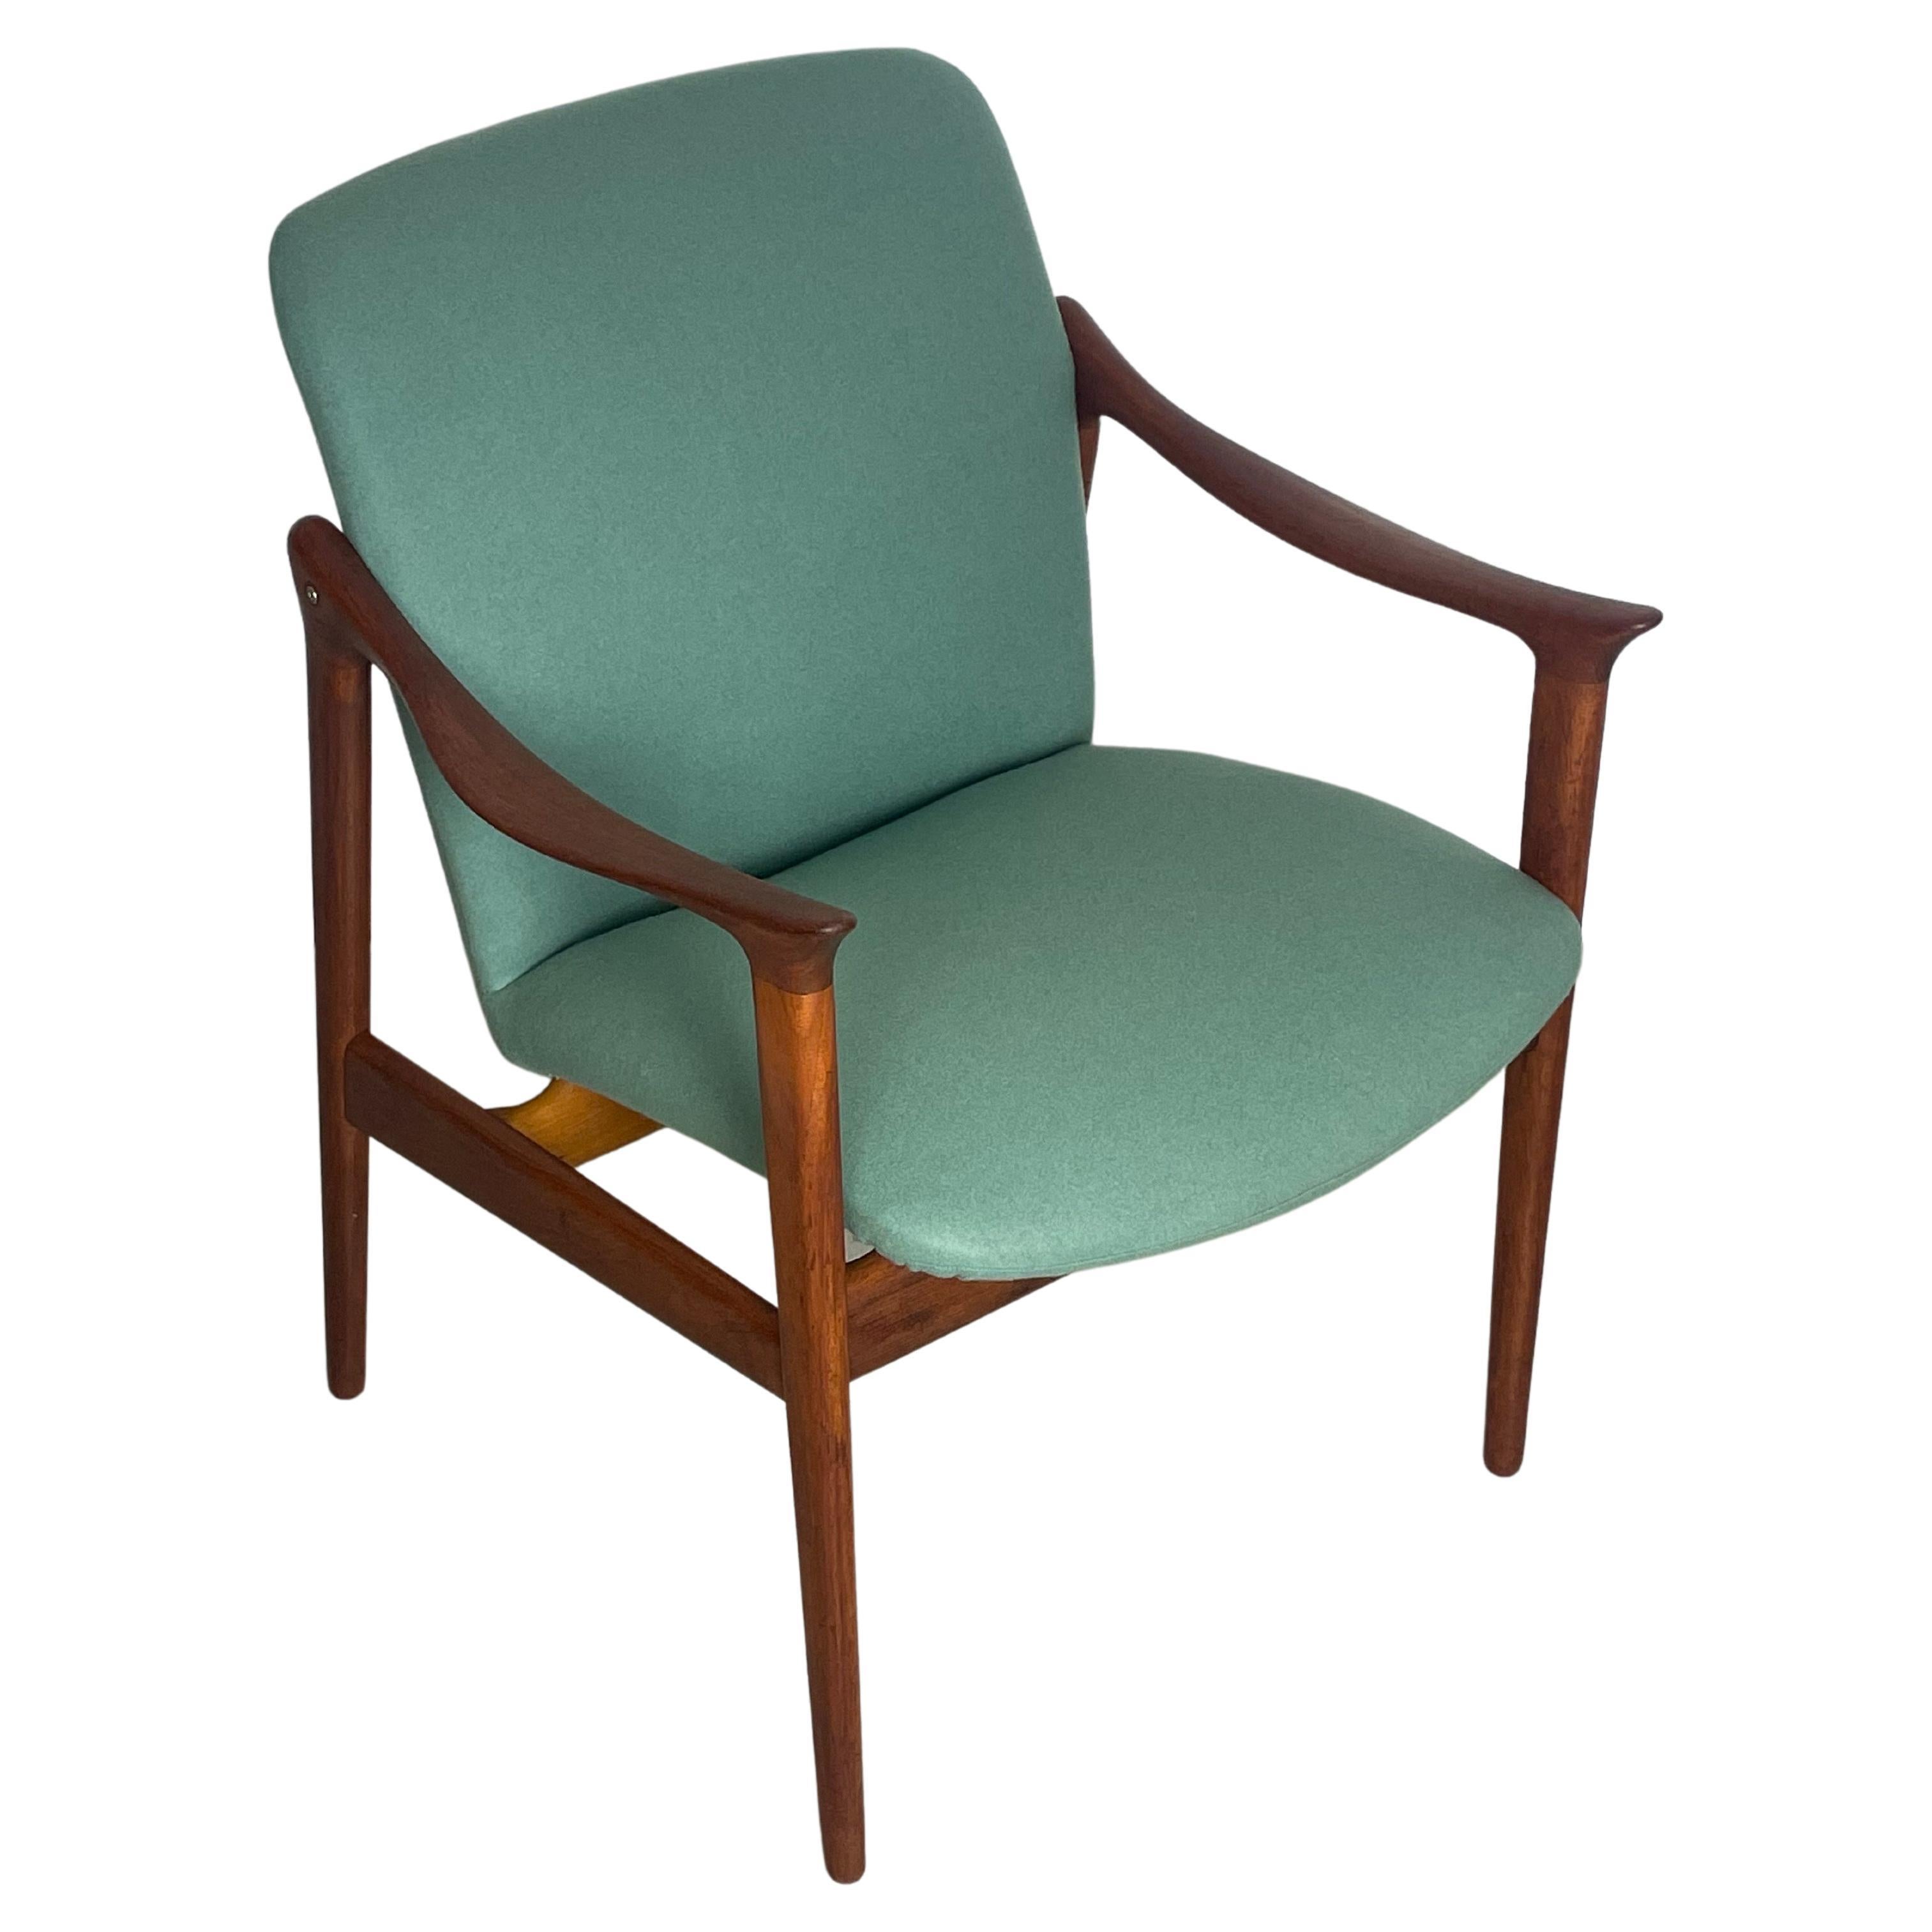 Ein sehr seltener Armlehnstuhl aus Teakholz, entworfen von Fredrik A. Kayser. Hergestellt in Norwegen in den 1950er Jahren von dem Möbelhersteller Vatne Lenestolfabrikk. Der Stuhl wurde komplett restauriert und mit einem hochwertigen Wollstoff neu